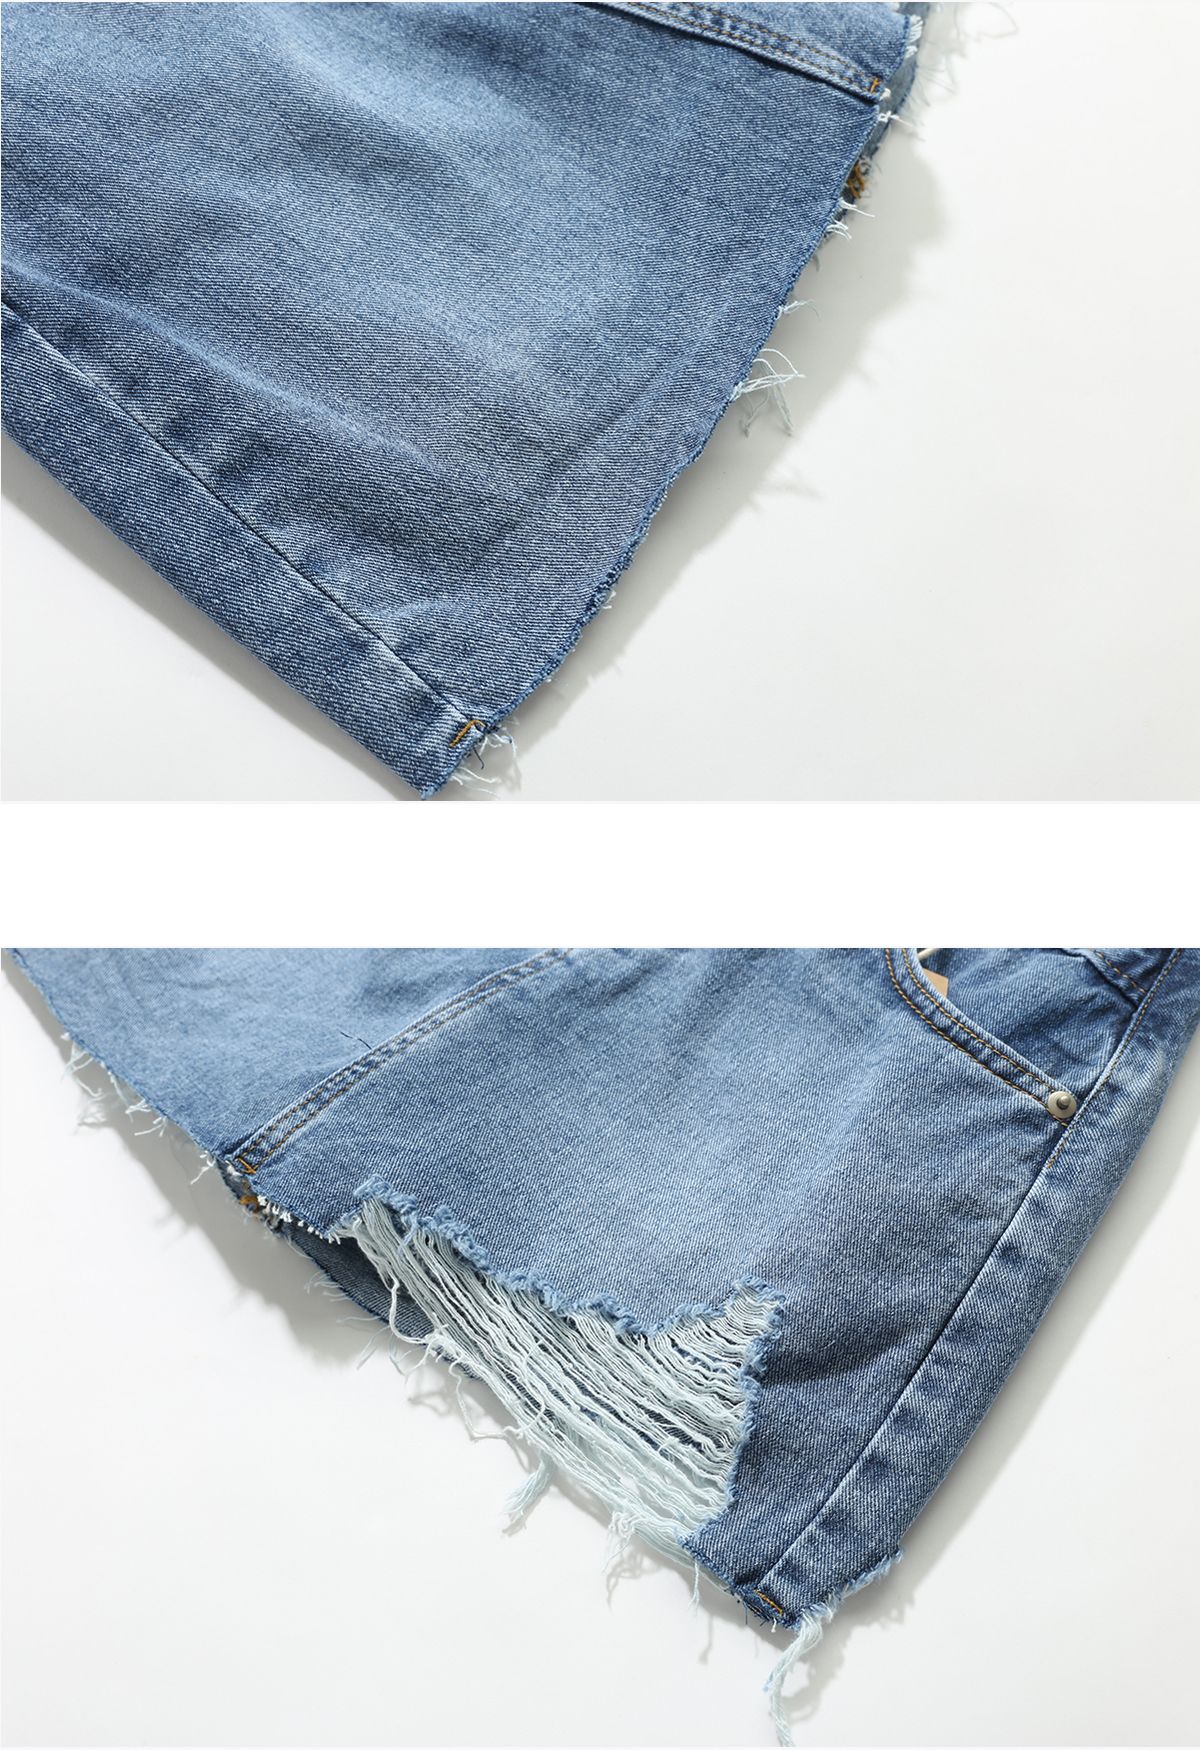 Saia jeans rasgada na cintura cruzada em azul escuro